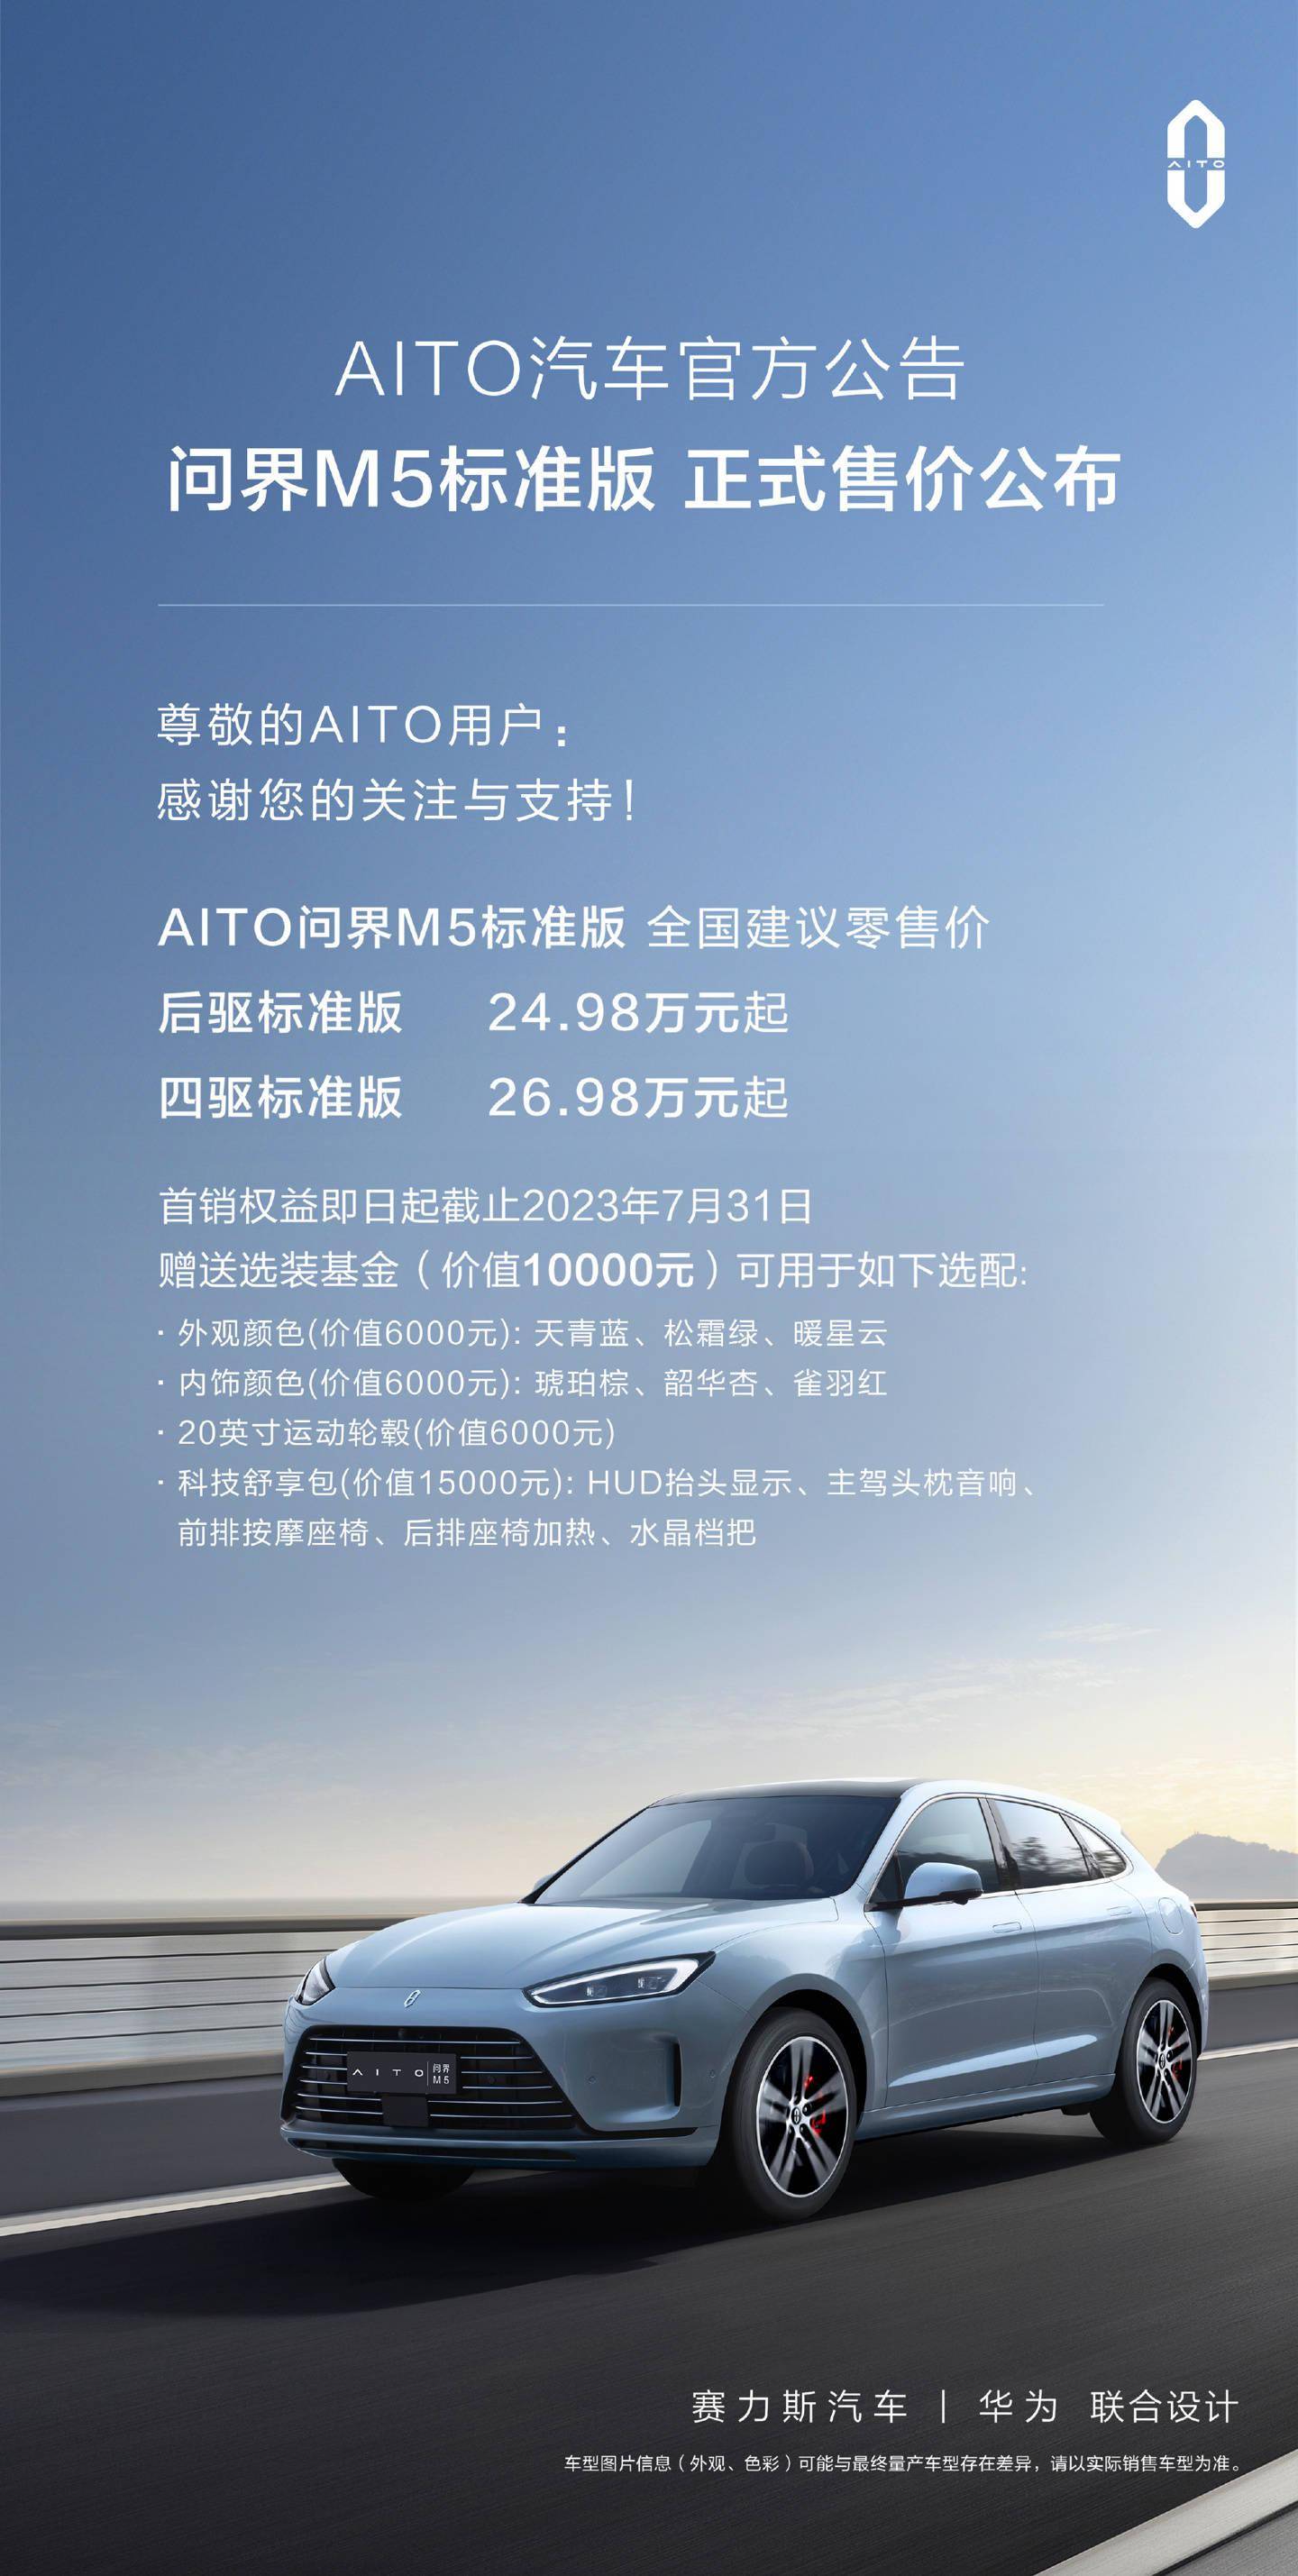 新款问界M5标准版车型正式售价公布 问界M5四驱标准版售价26.98万元